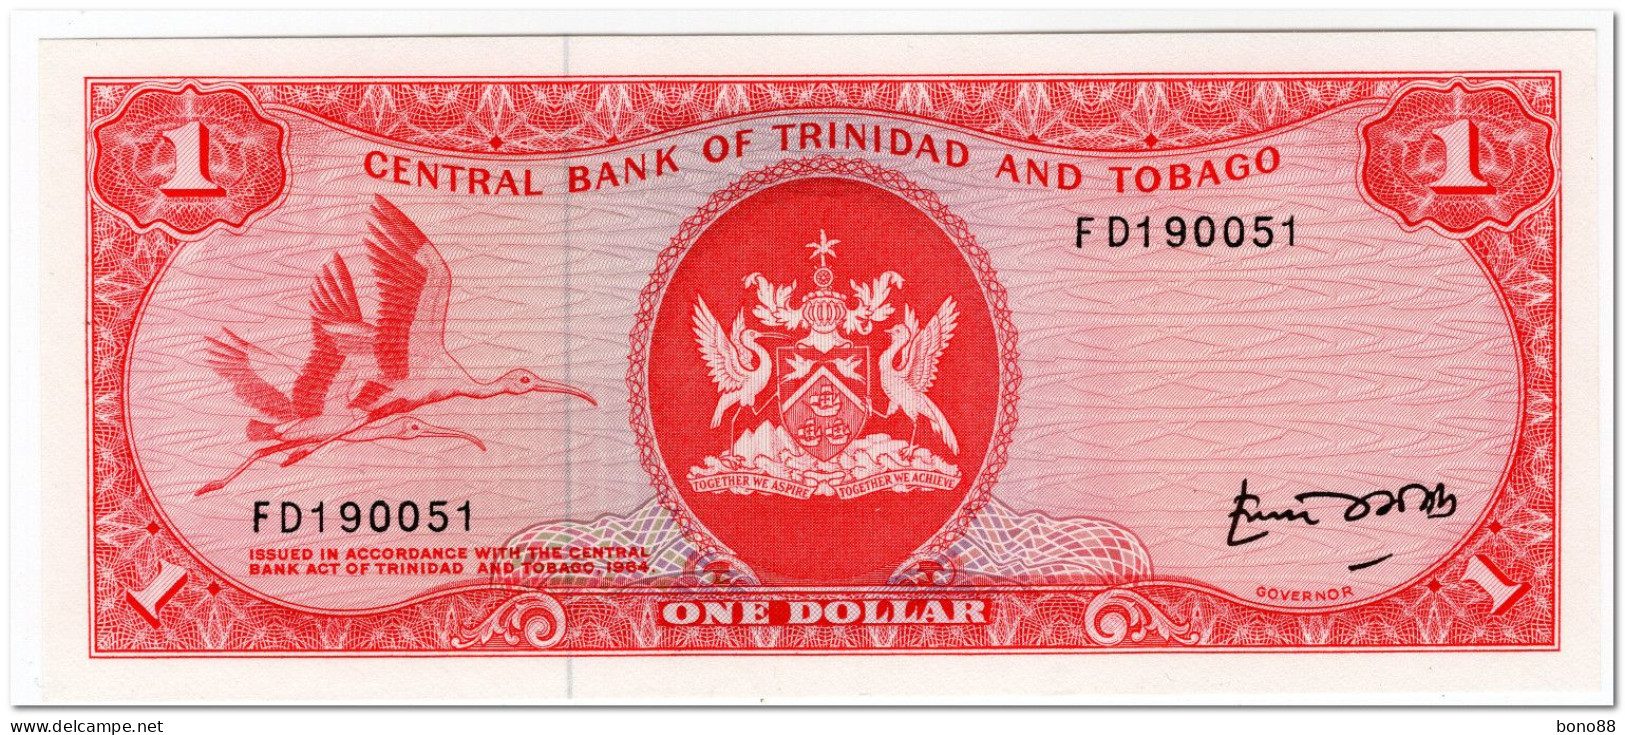 TRINIDAD & TOBAGO,1 DOLLAR,L.1964, (1977) P.30b,UNC - Trinidad & Tobago